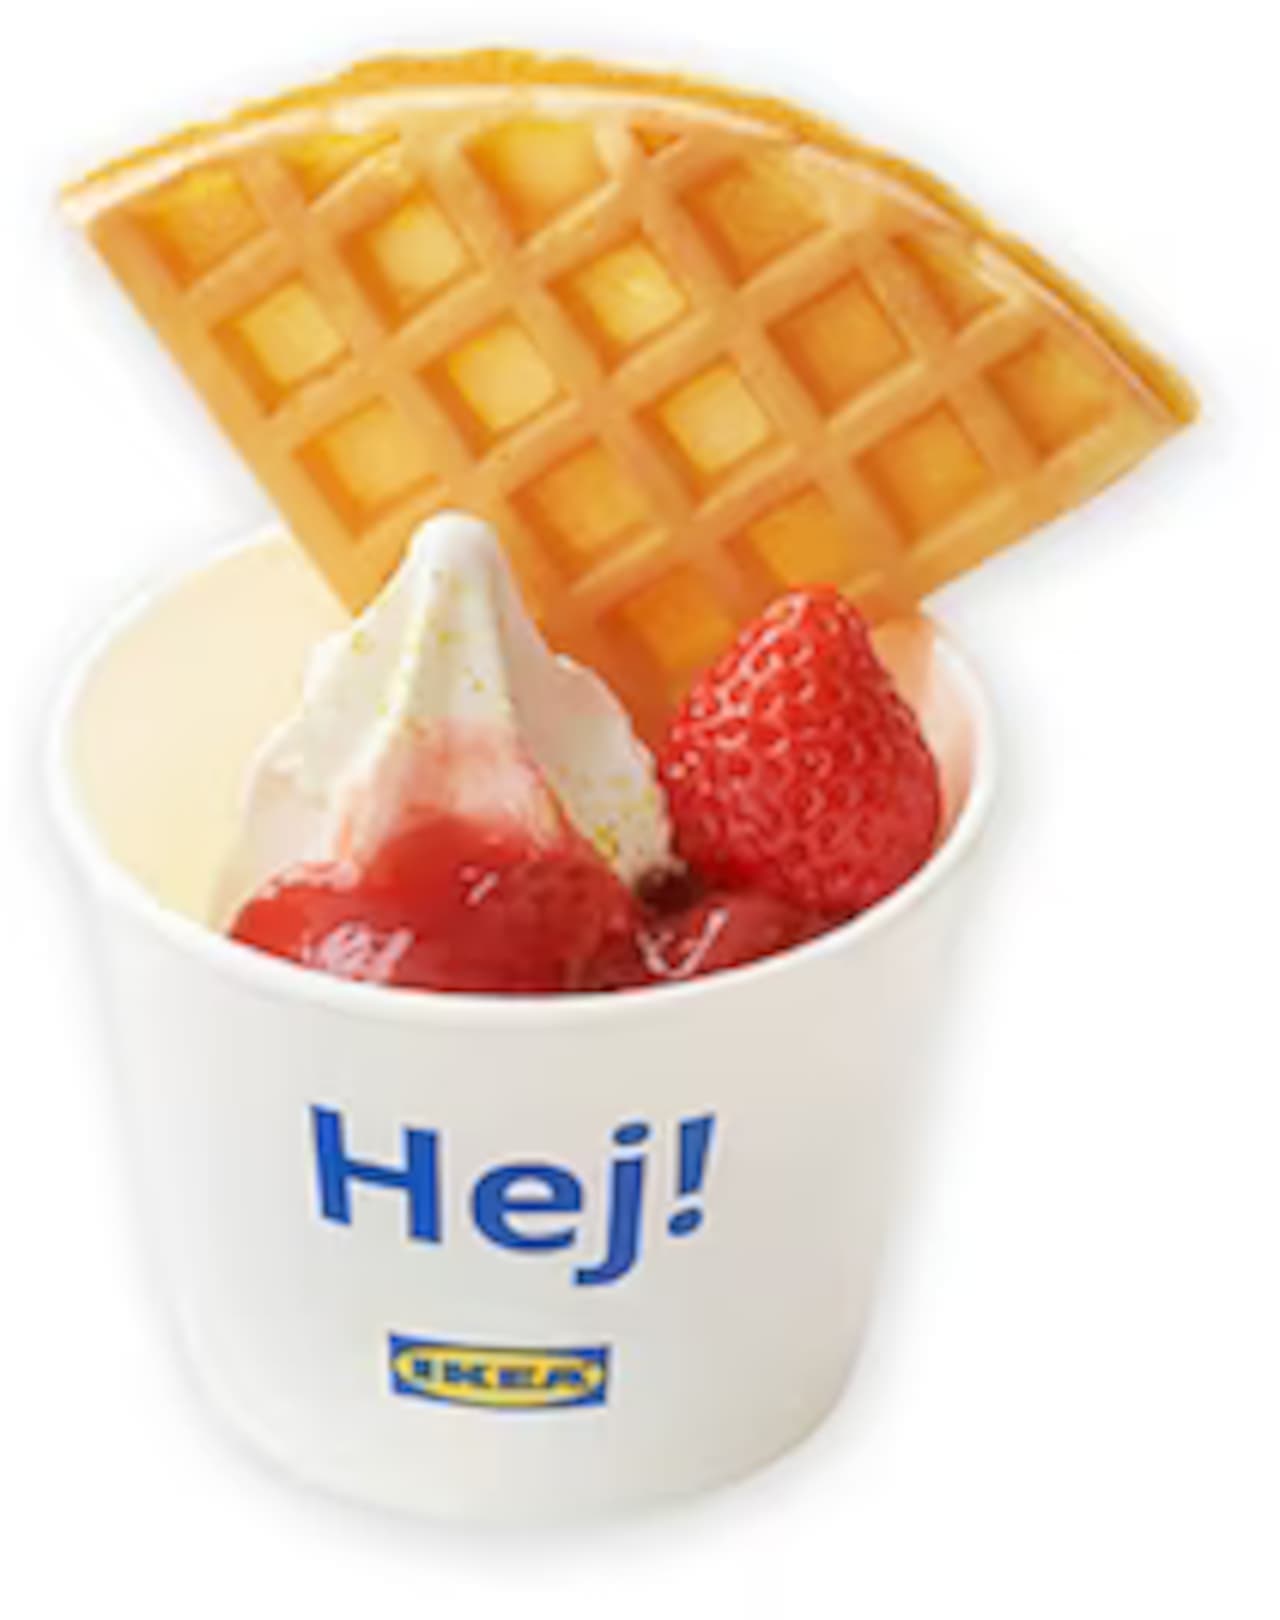 IKEA "Waffle Strawberry Sundae